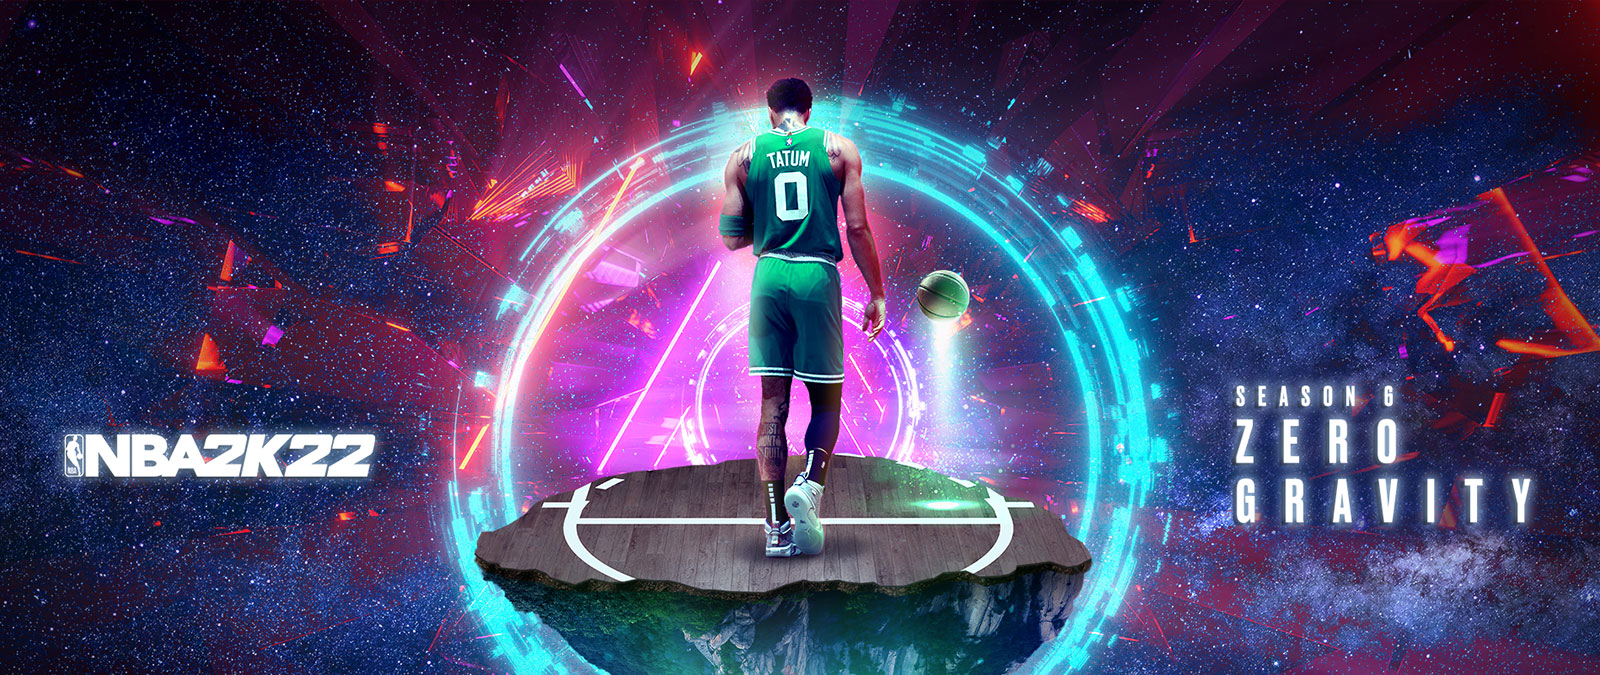 NBA 2K22, Season 6 Zero Gravity, Tatum se tient sur une partie flottante d’un terrain de basket dans l’espace avec des anneaux d’énergie qui l’entourent.